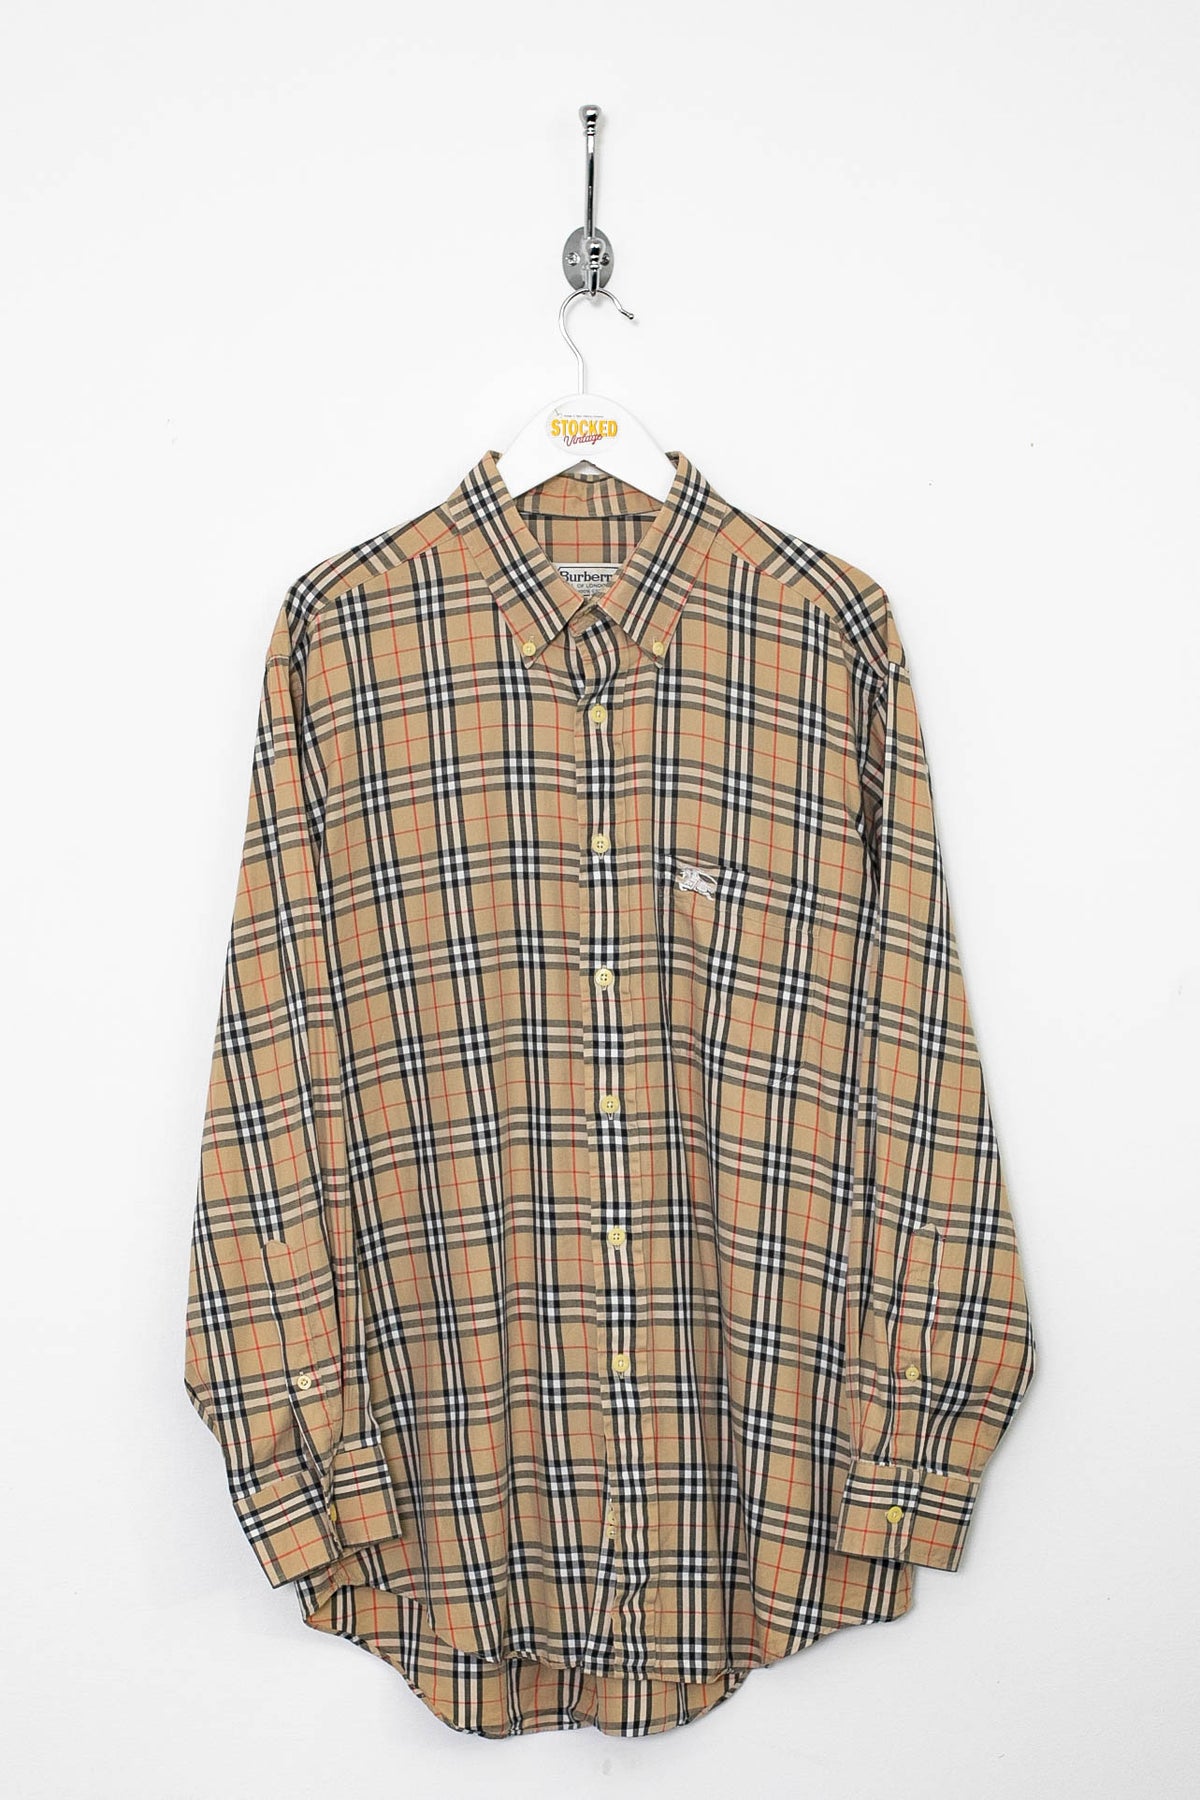 90s Burberry Nova Check Shirt (L)